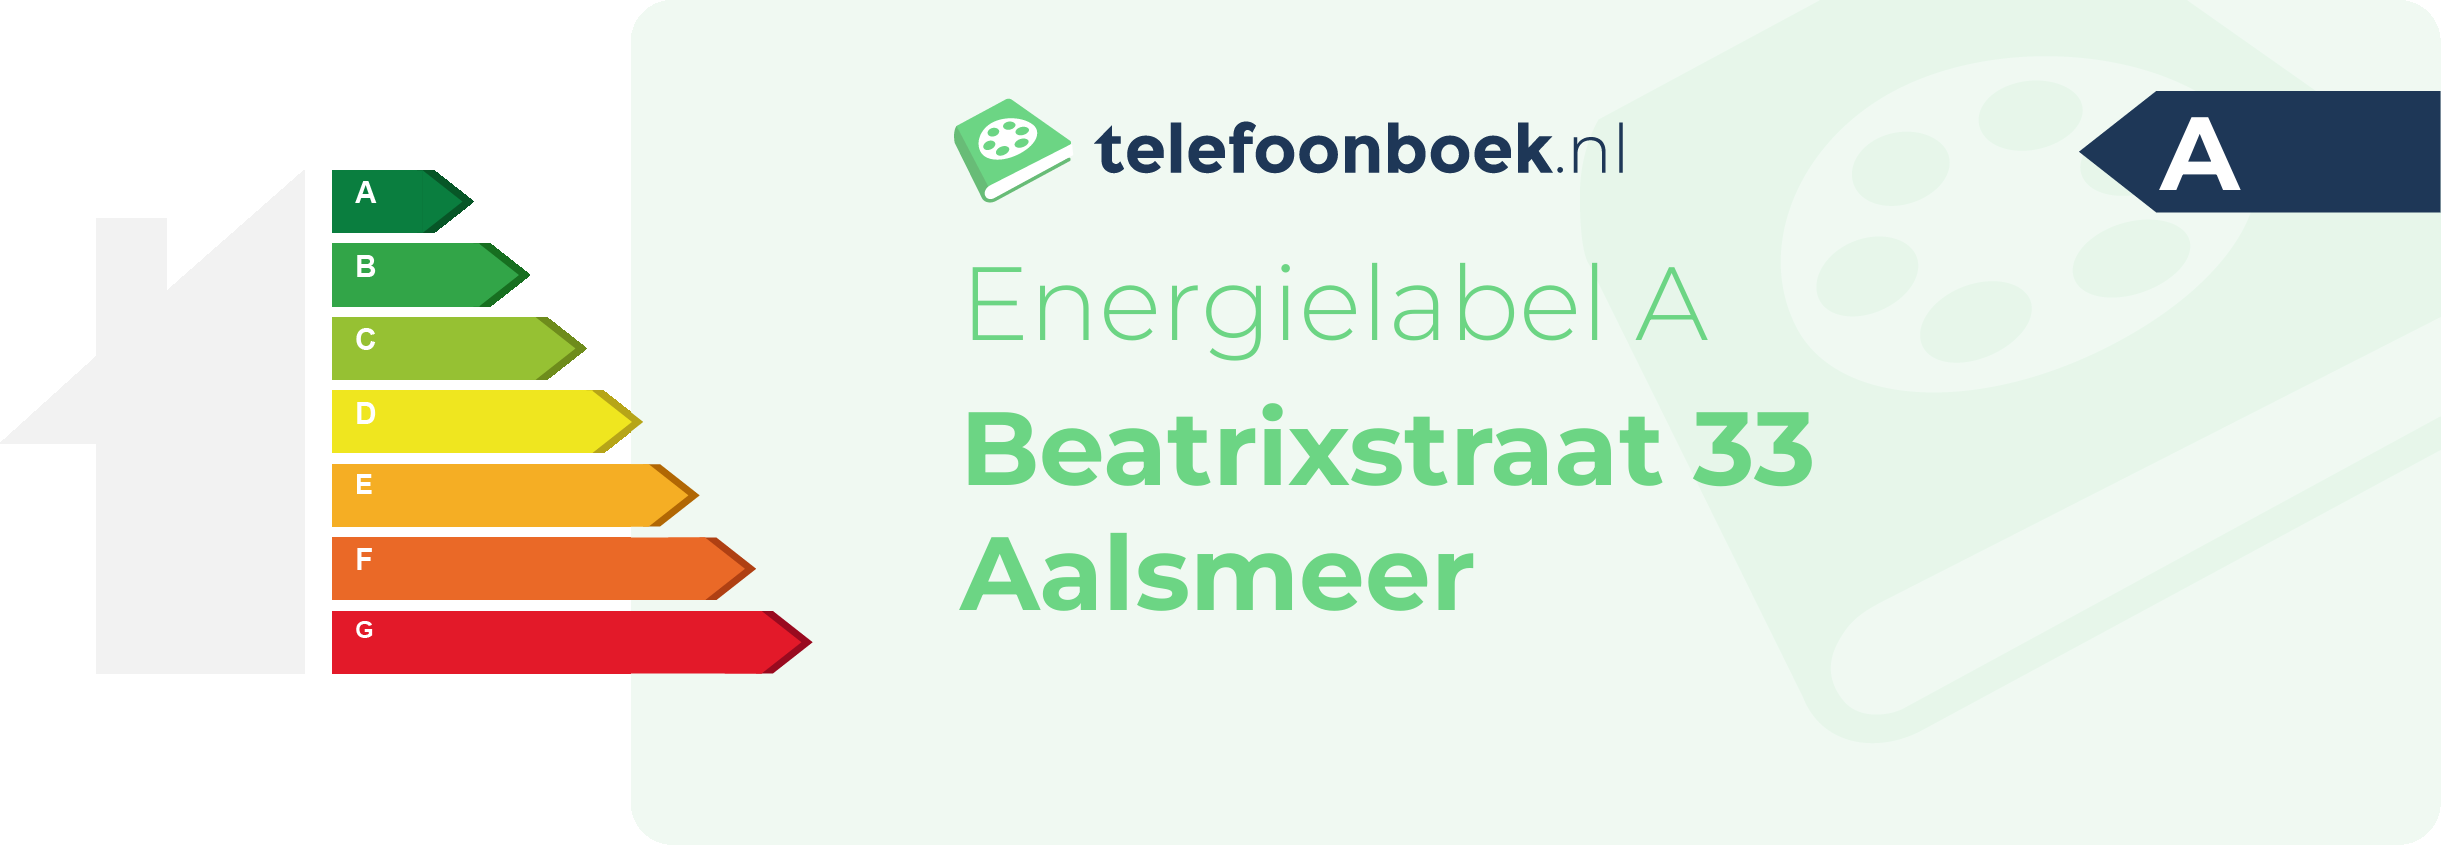 Energielabel Beatrixstraat 33 Aalsmeer